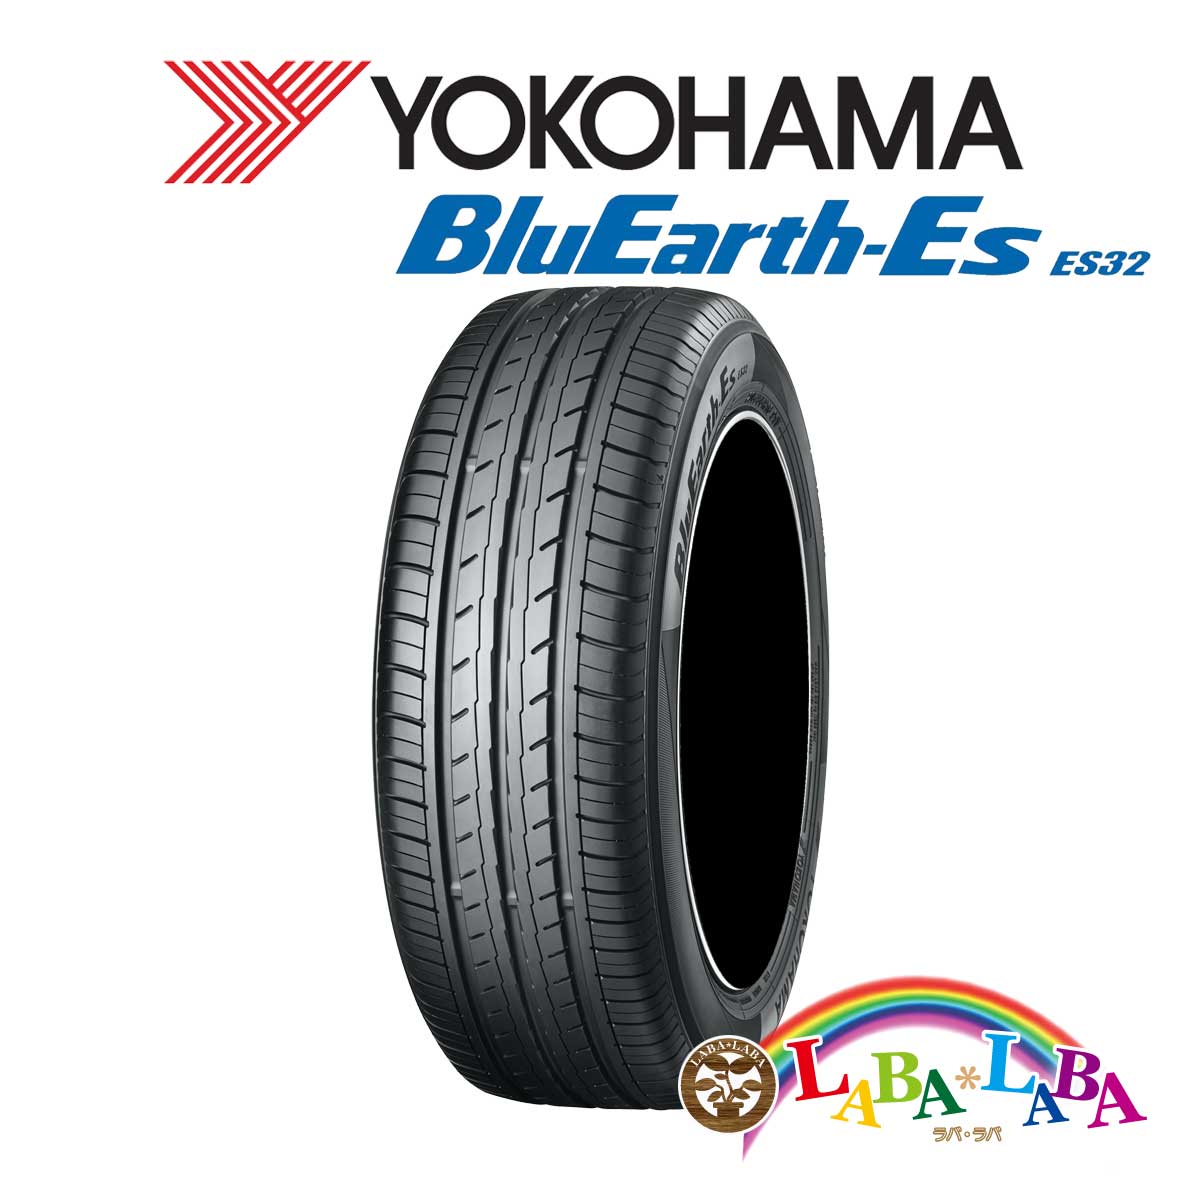 ２本以上送料無料 国産タイヤ サマータイヤ 新品 タイヤのみ YOKOHAMA ヨコハマ ES32 80R12 74S ブルーアース BluEarth-Es 実物 145 おトク